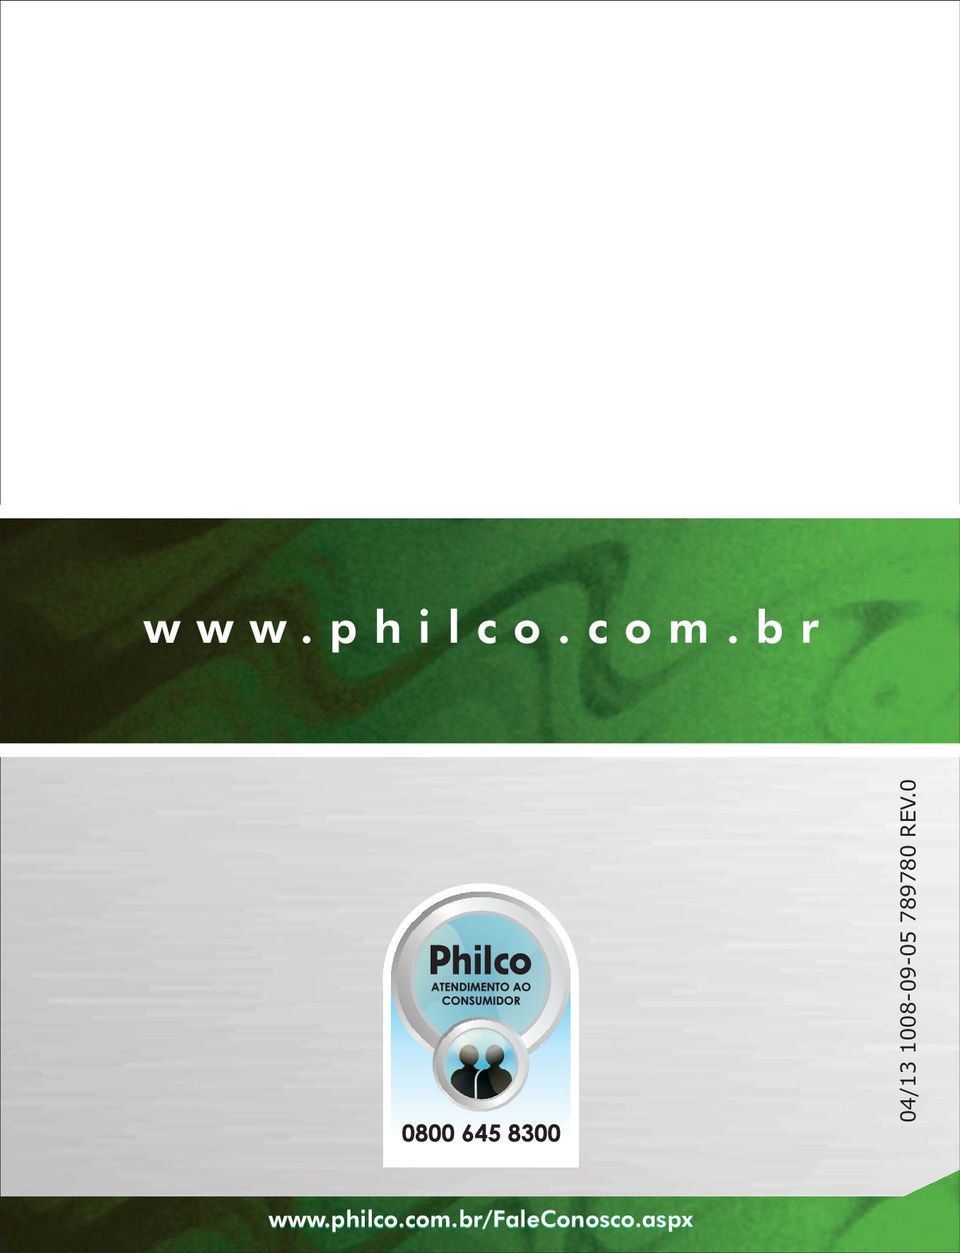 philco.com.br www.